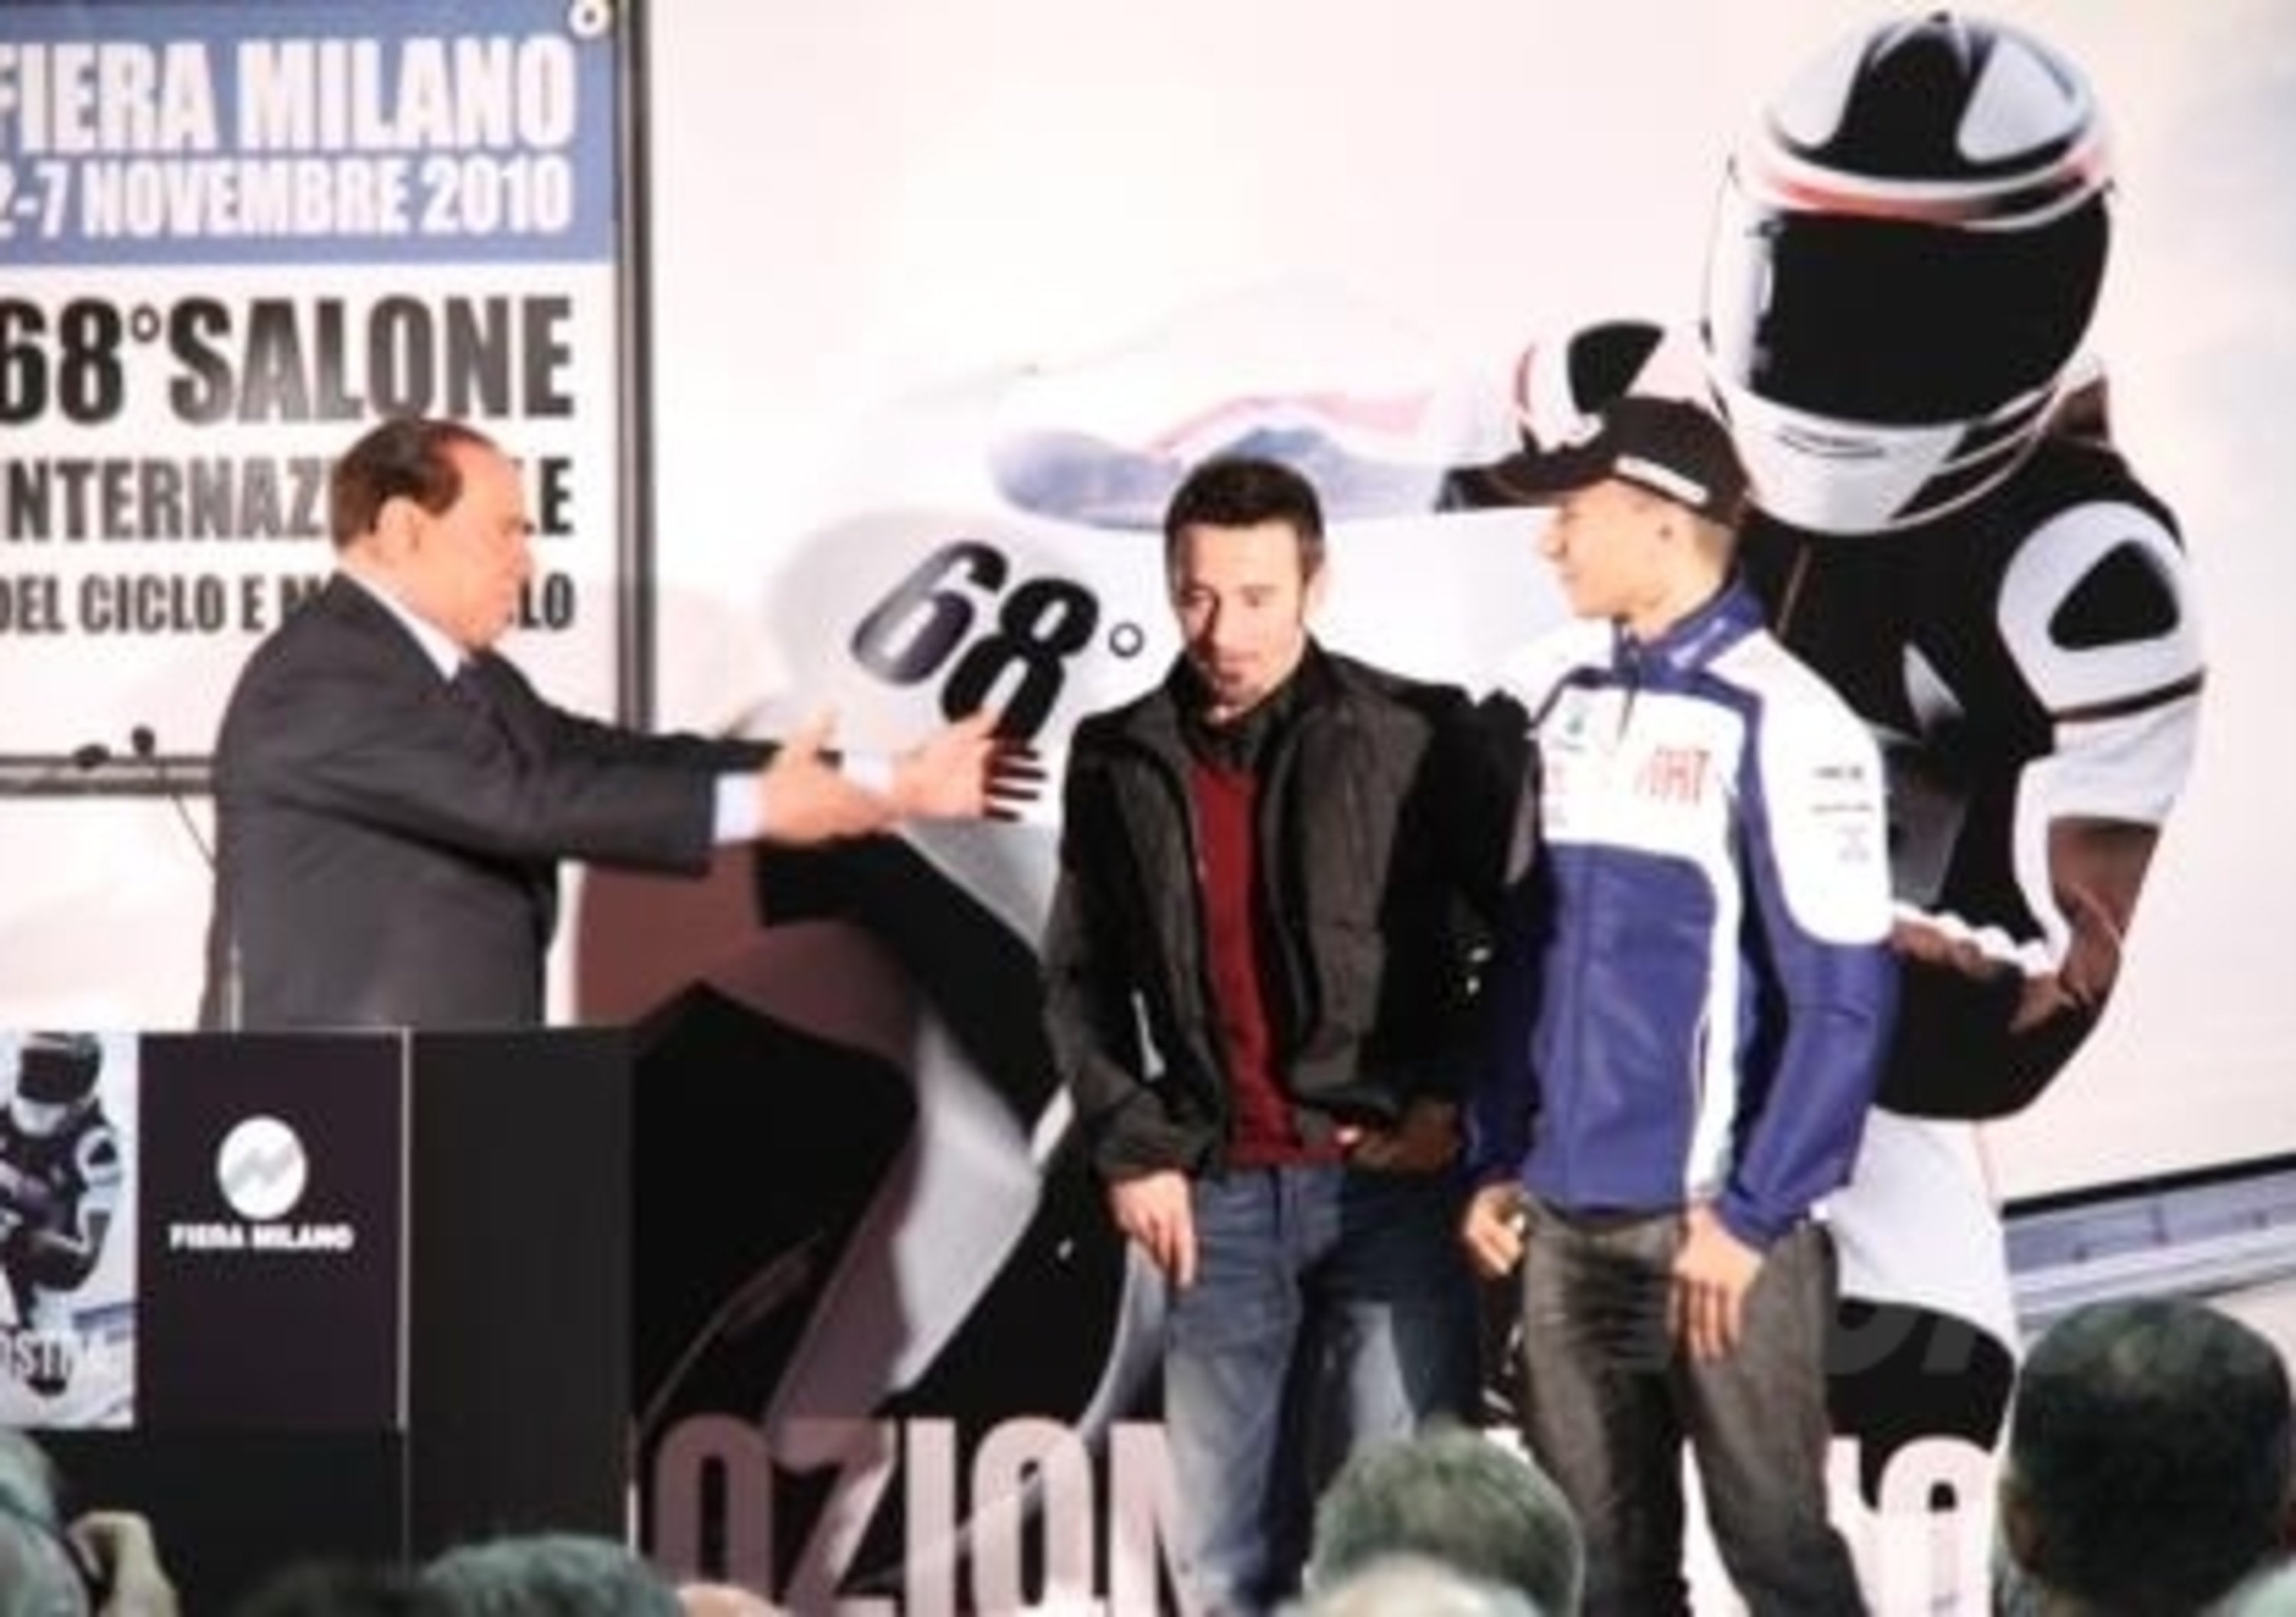 Berlusconi apre EICMA 2010 con Lorenzo e Biaggi